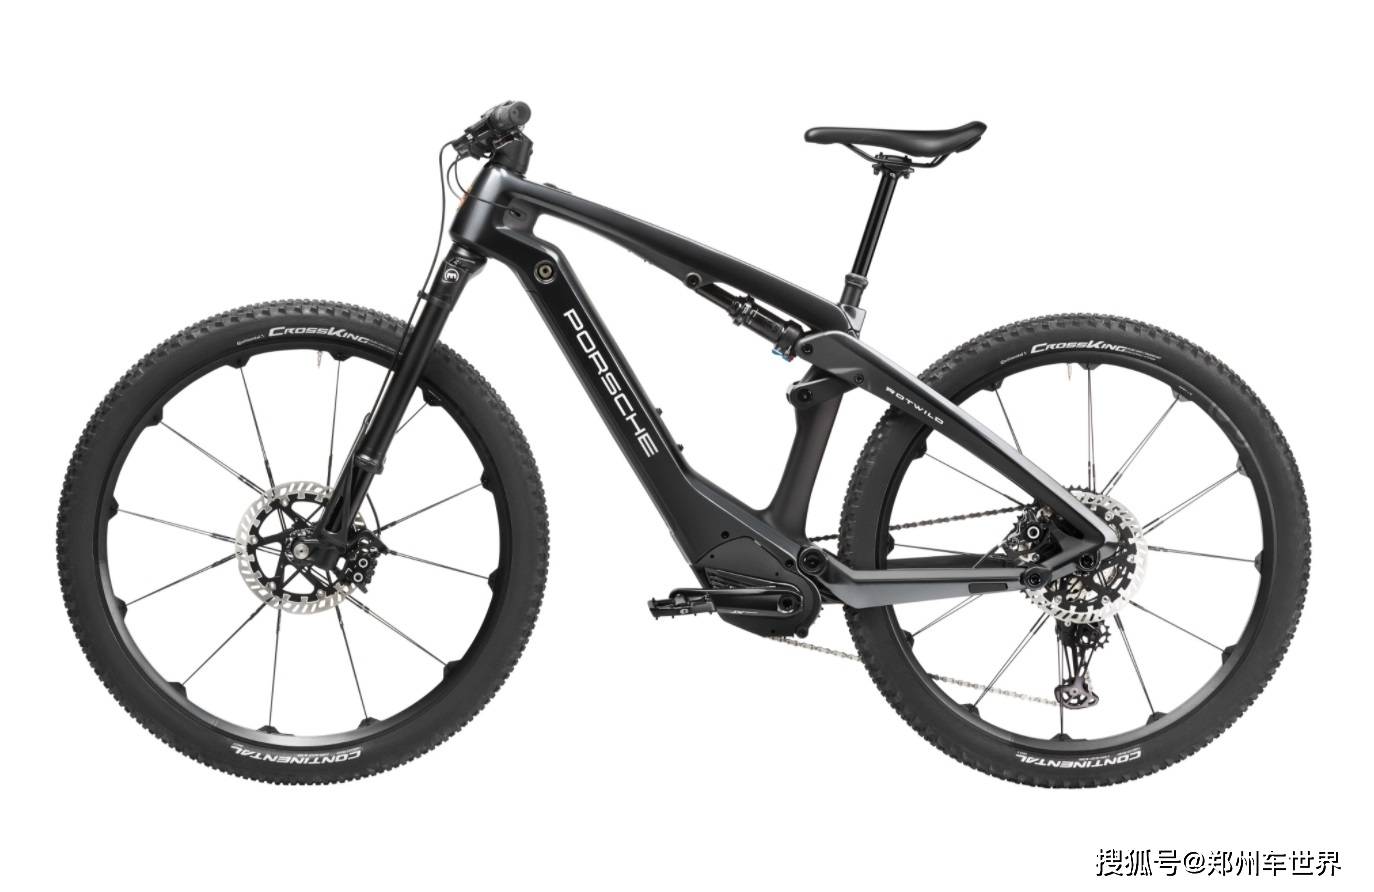 采用全悬挂碳纤维车架保时捷发布两款豪华电动自行车 Ebike